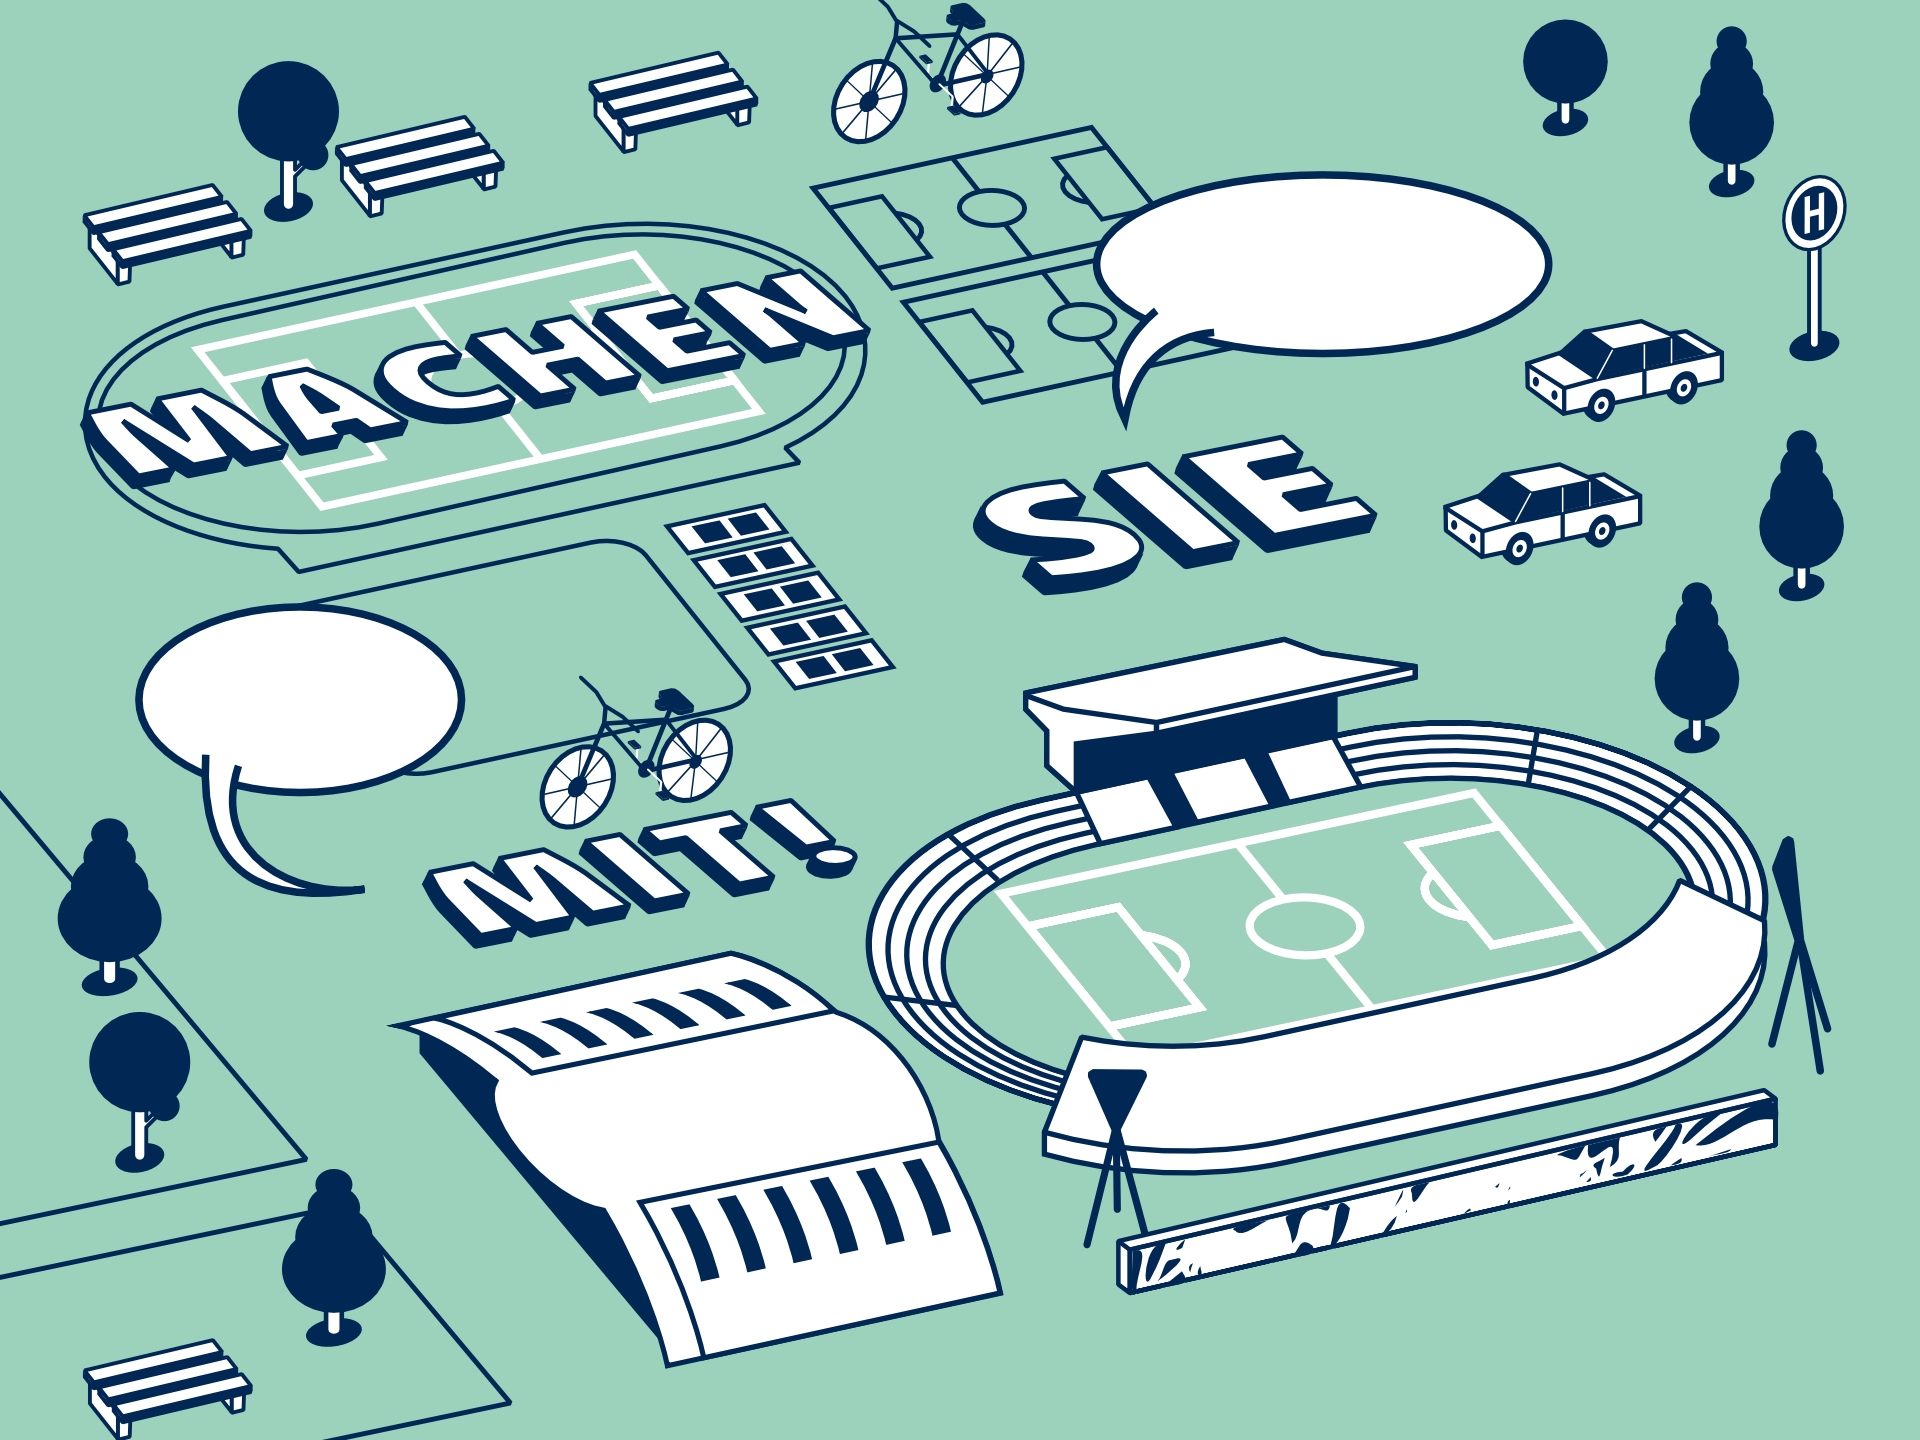 Cover-Auszug des Veranstaltungsplakates zur 1. Werkstatt. Illustration zeigt typische Architektur-Elemente des Jahnsportparks.